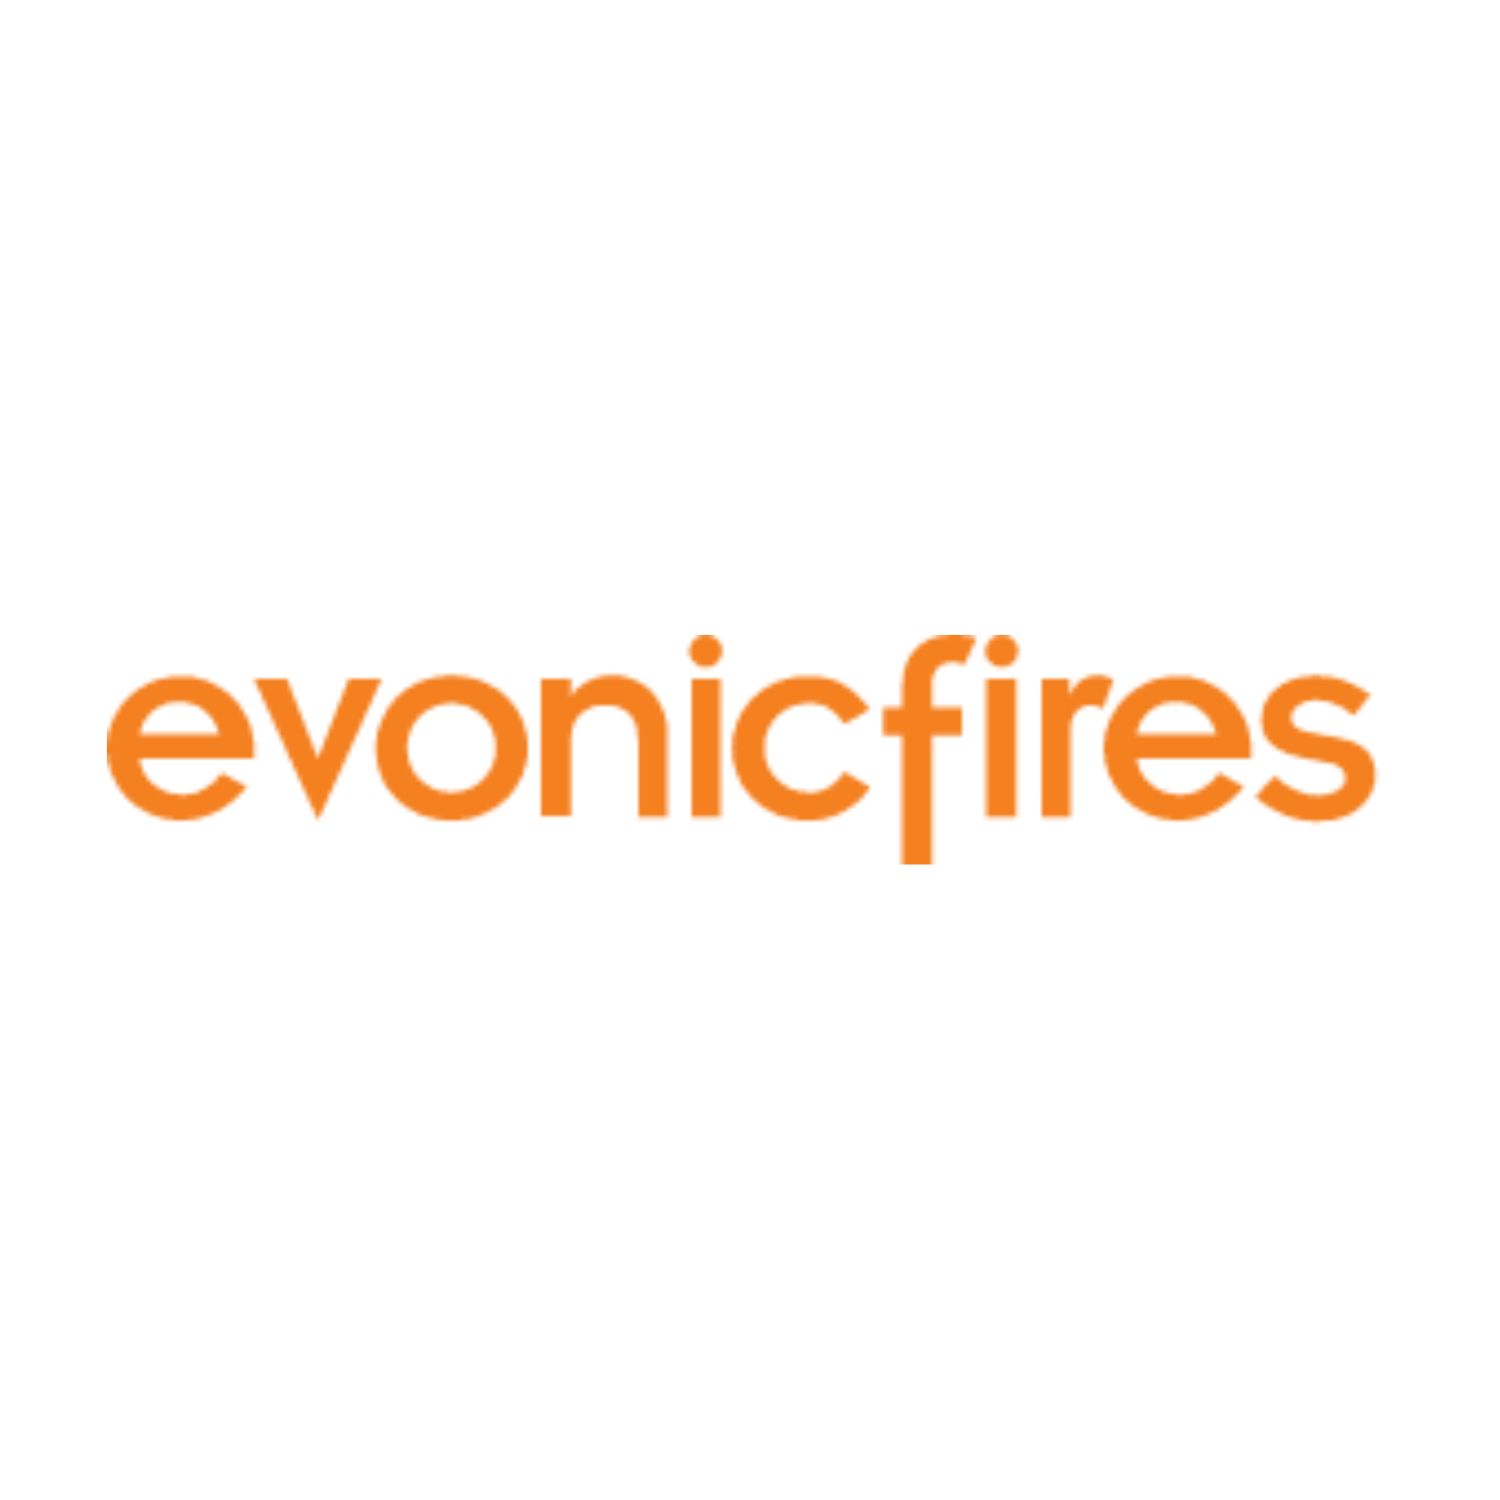 Evonicfires